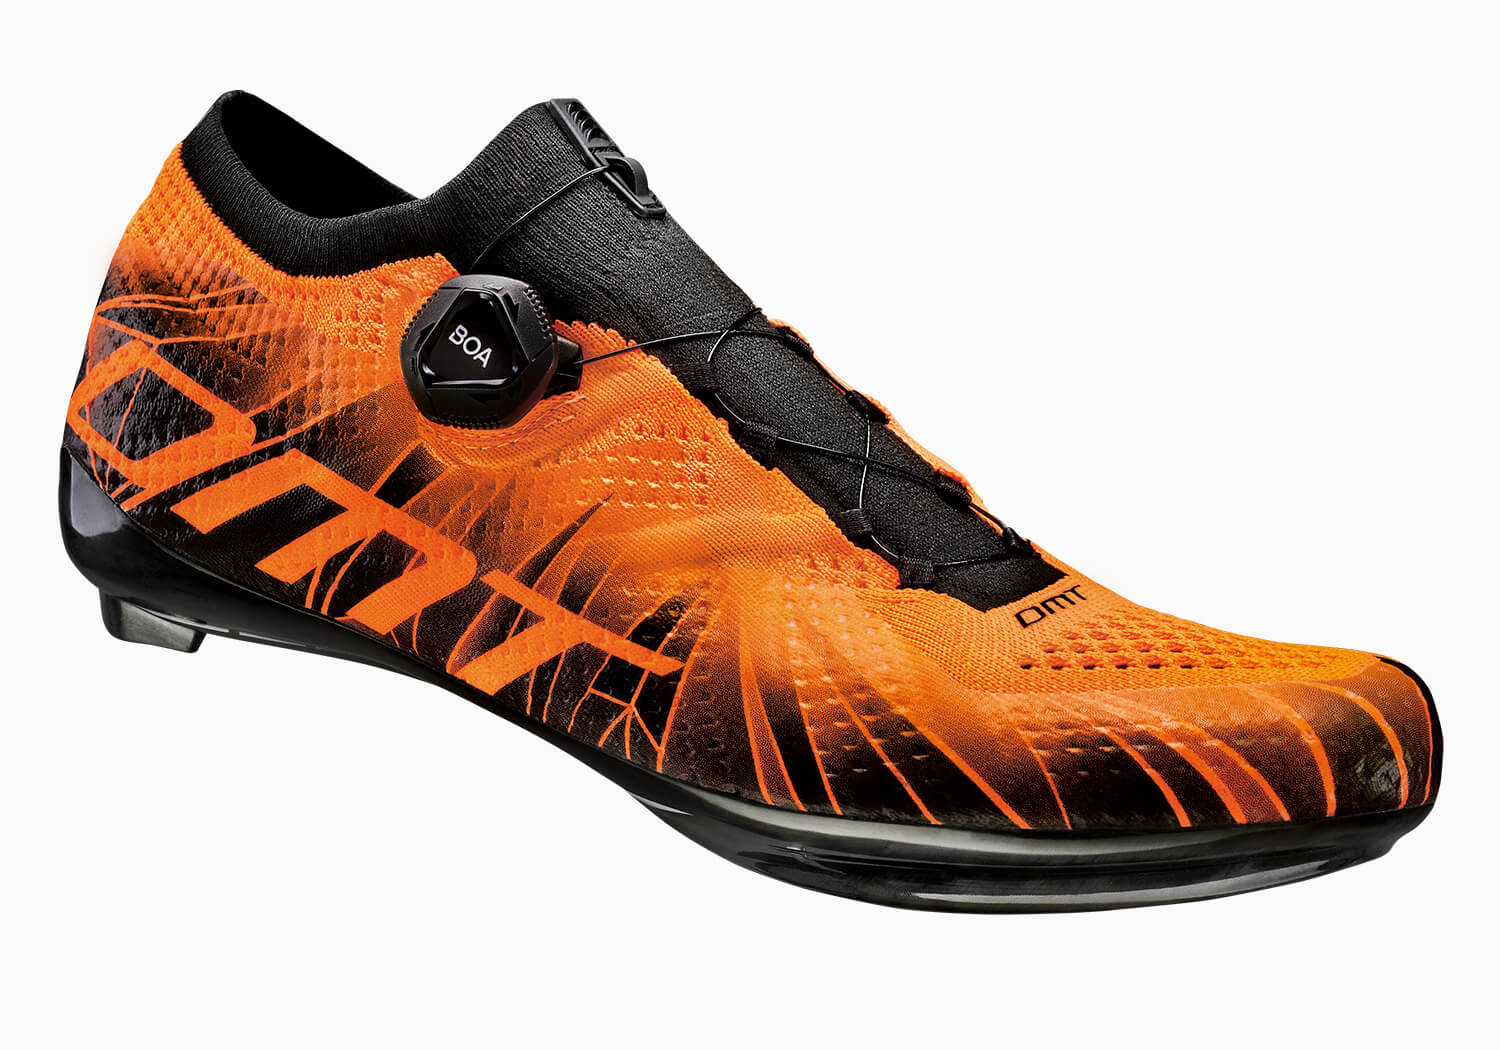 Novità prodotto DMT Knit Technology per le scarpe da ciclismo da corsa